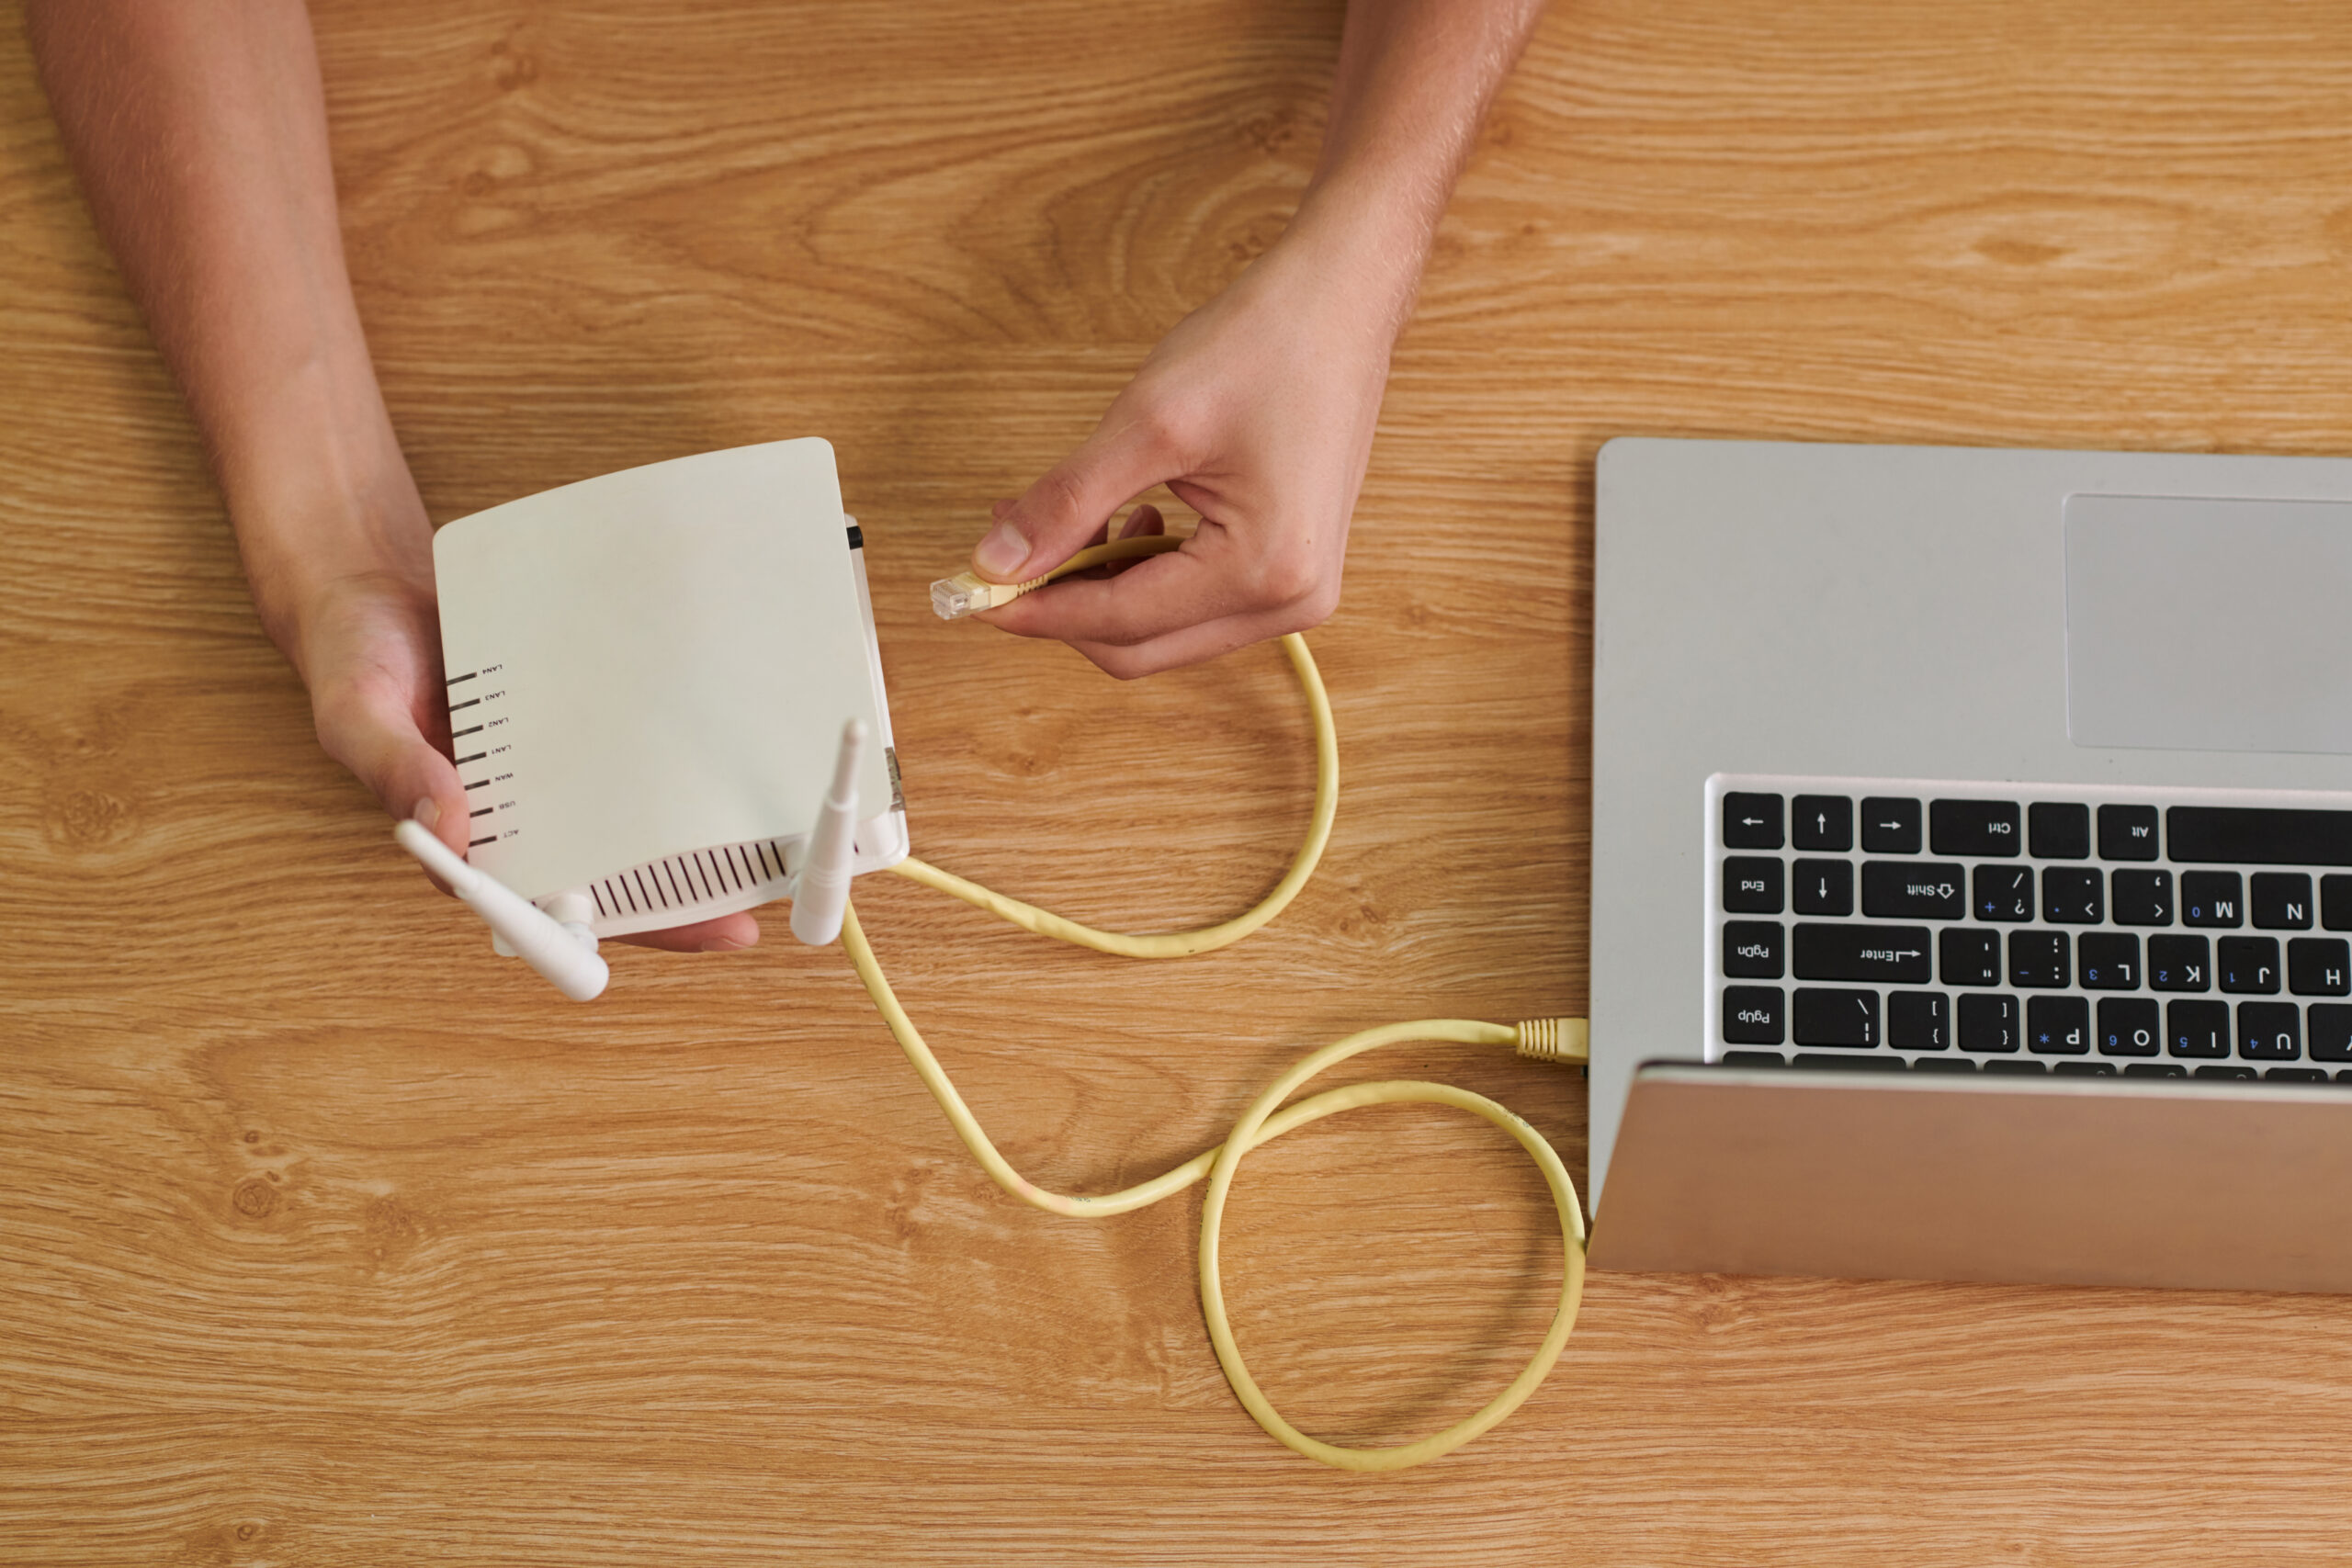 Eine Person schließt ein gelbes Ethernet-Kabel an einen weißen WLAN-Router an, der neben einem Laptop auf einem Holztisch liegt.